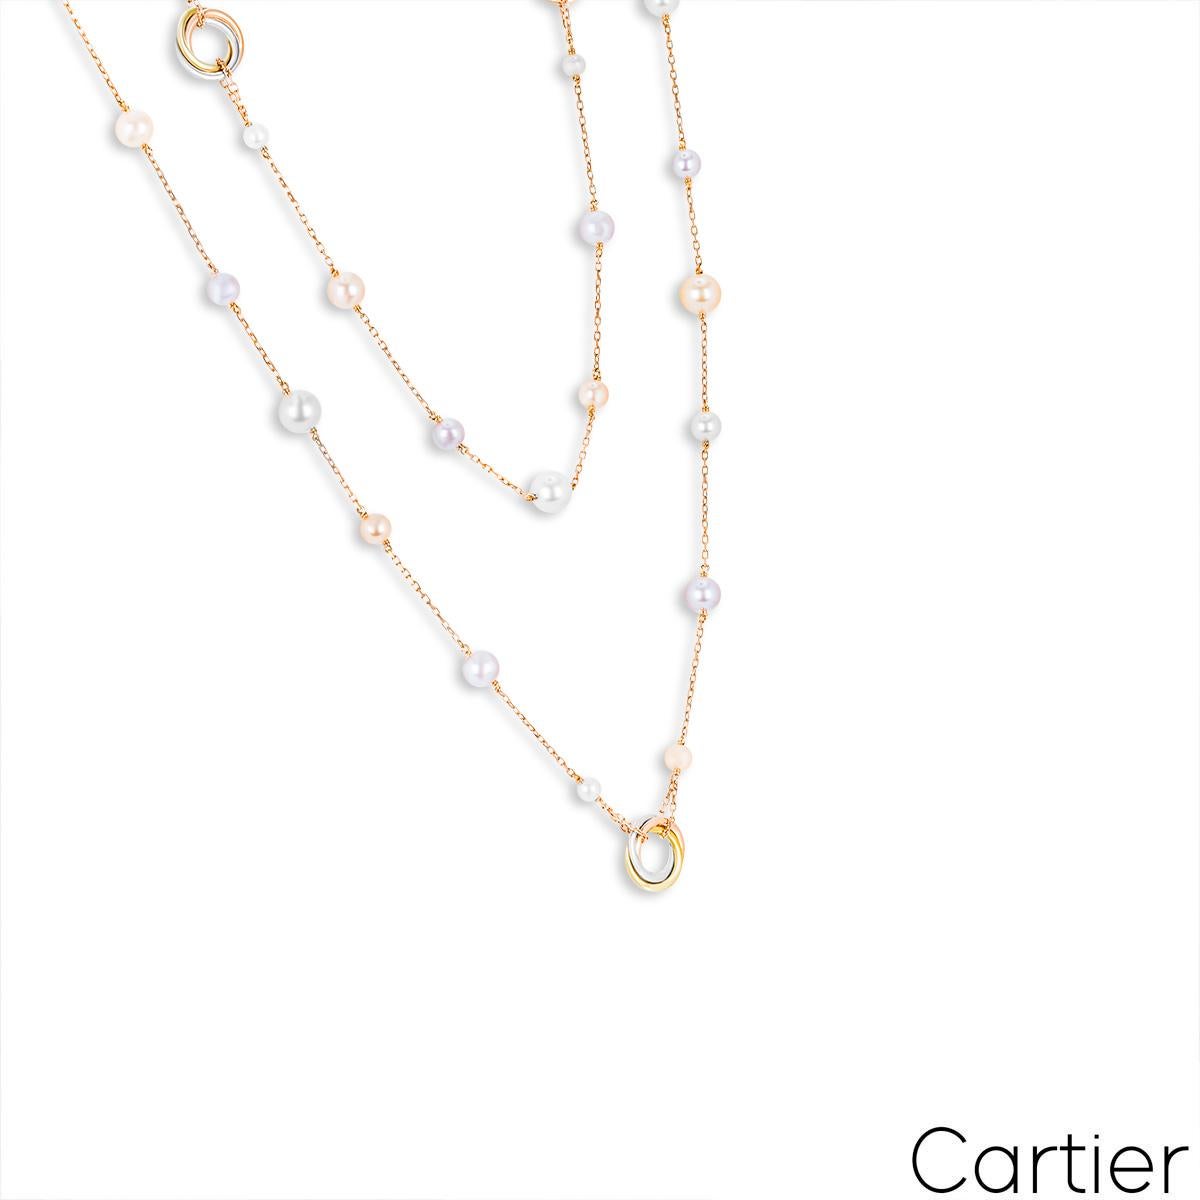 Un magnifique collier de perles en or rose 18 carats par Cartier de la collection Trinity de Cartier. Le collier est composé de 5 stations de trois motifs circulaires en or tricolore entrelacés. Entre chaque motif de la Trinité se trouvent 7 perles